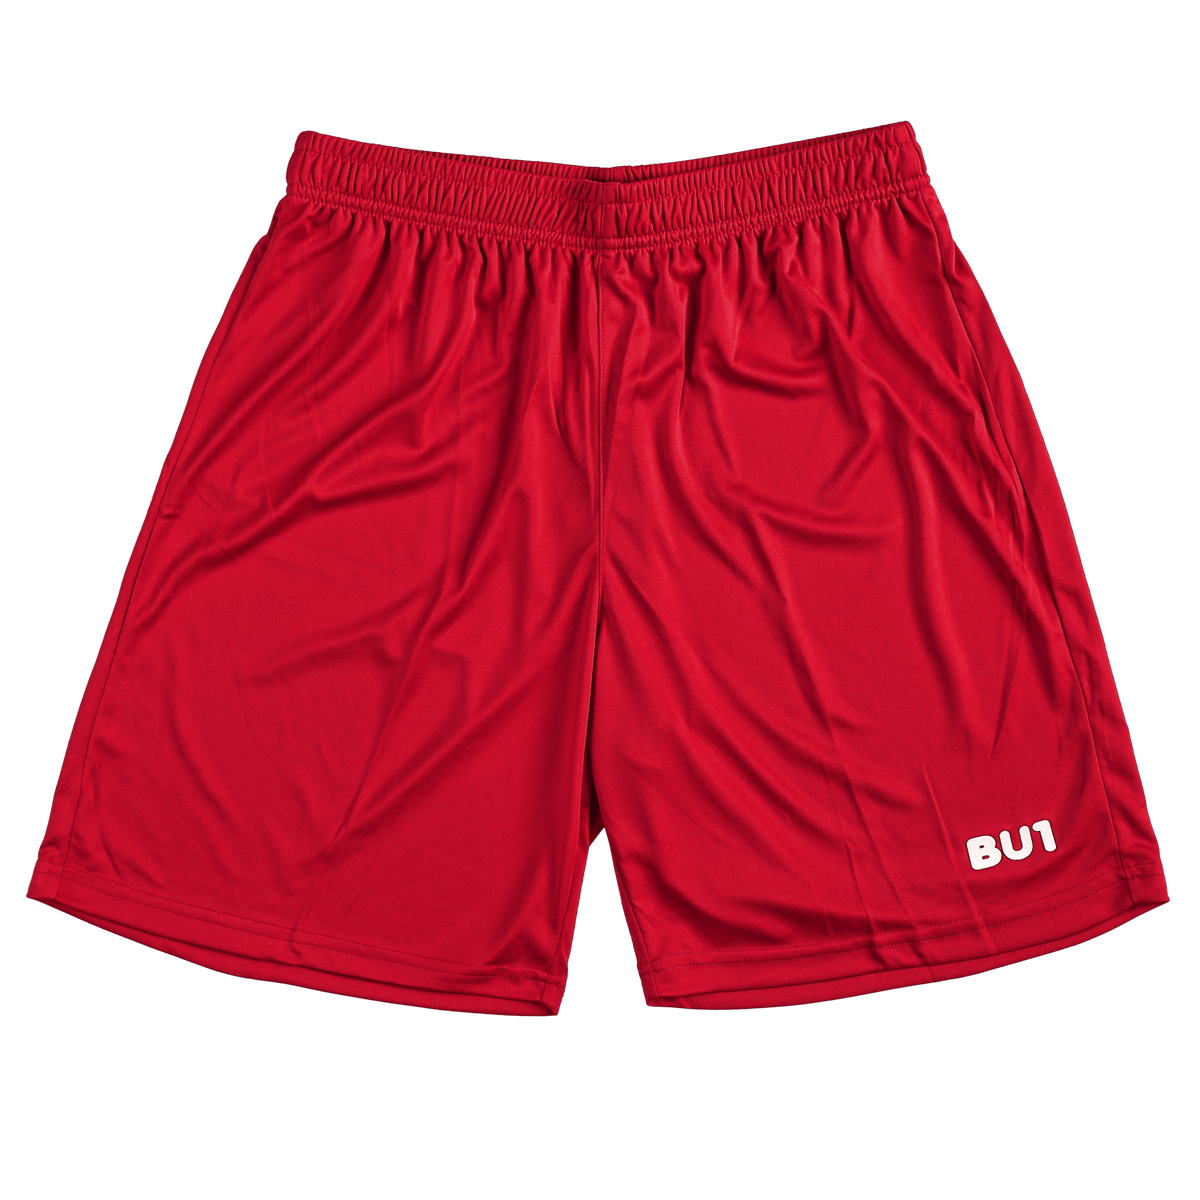 Pantalón corto BU1 20 rojo